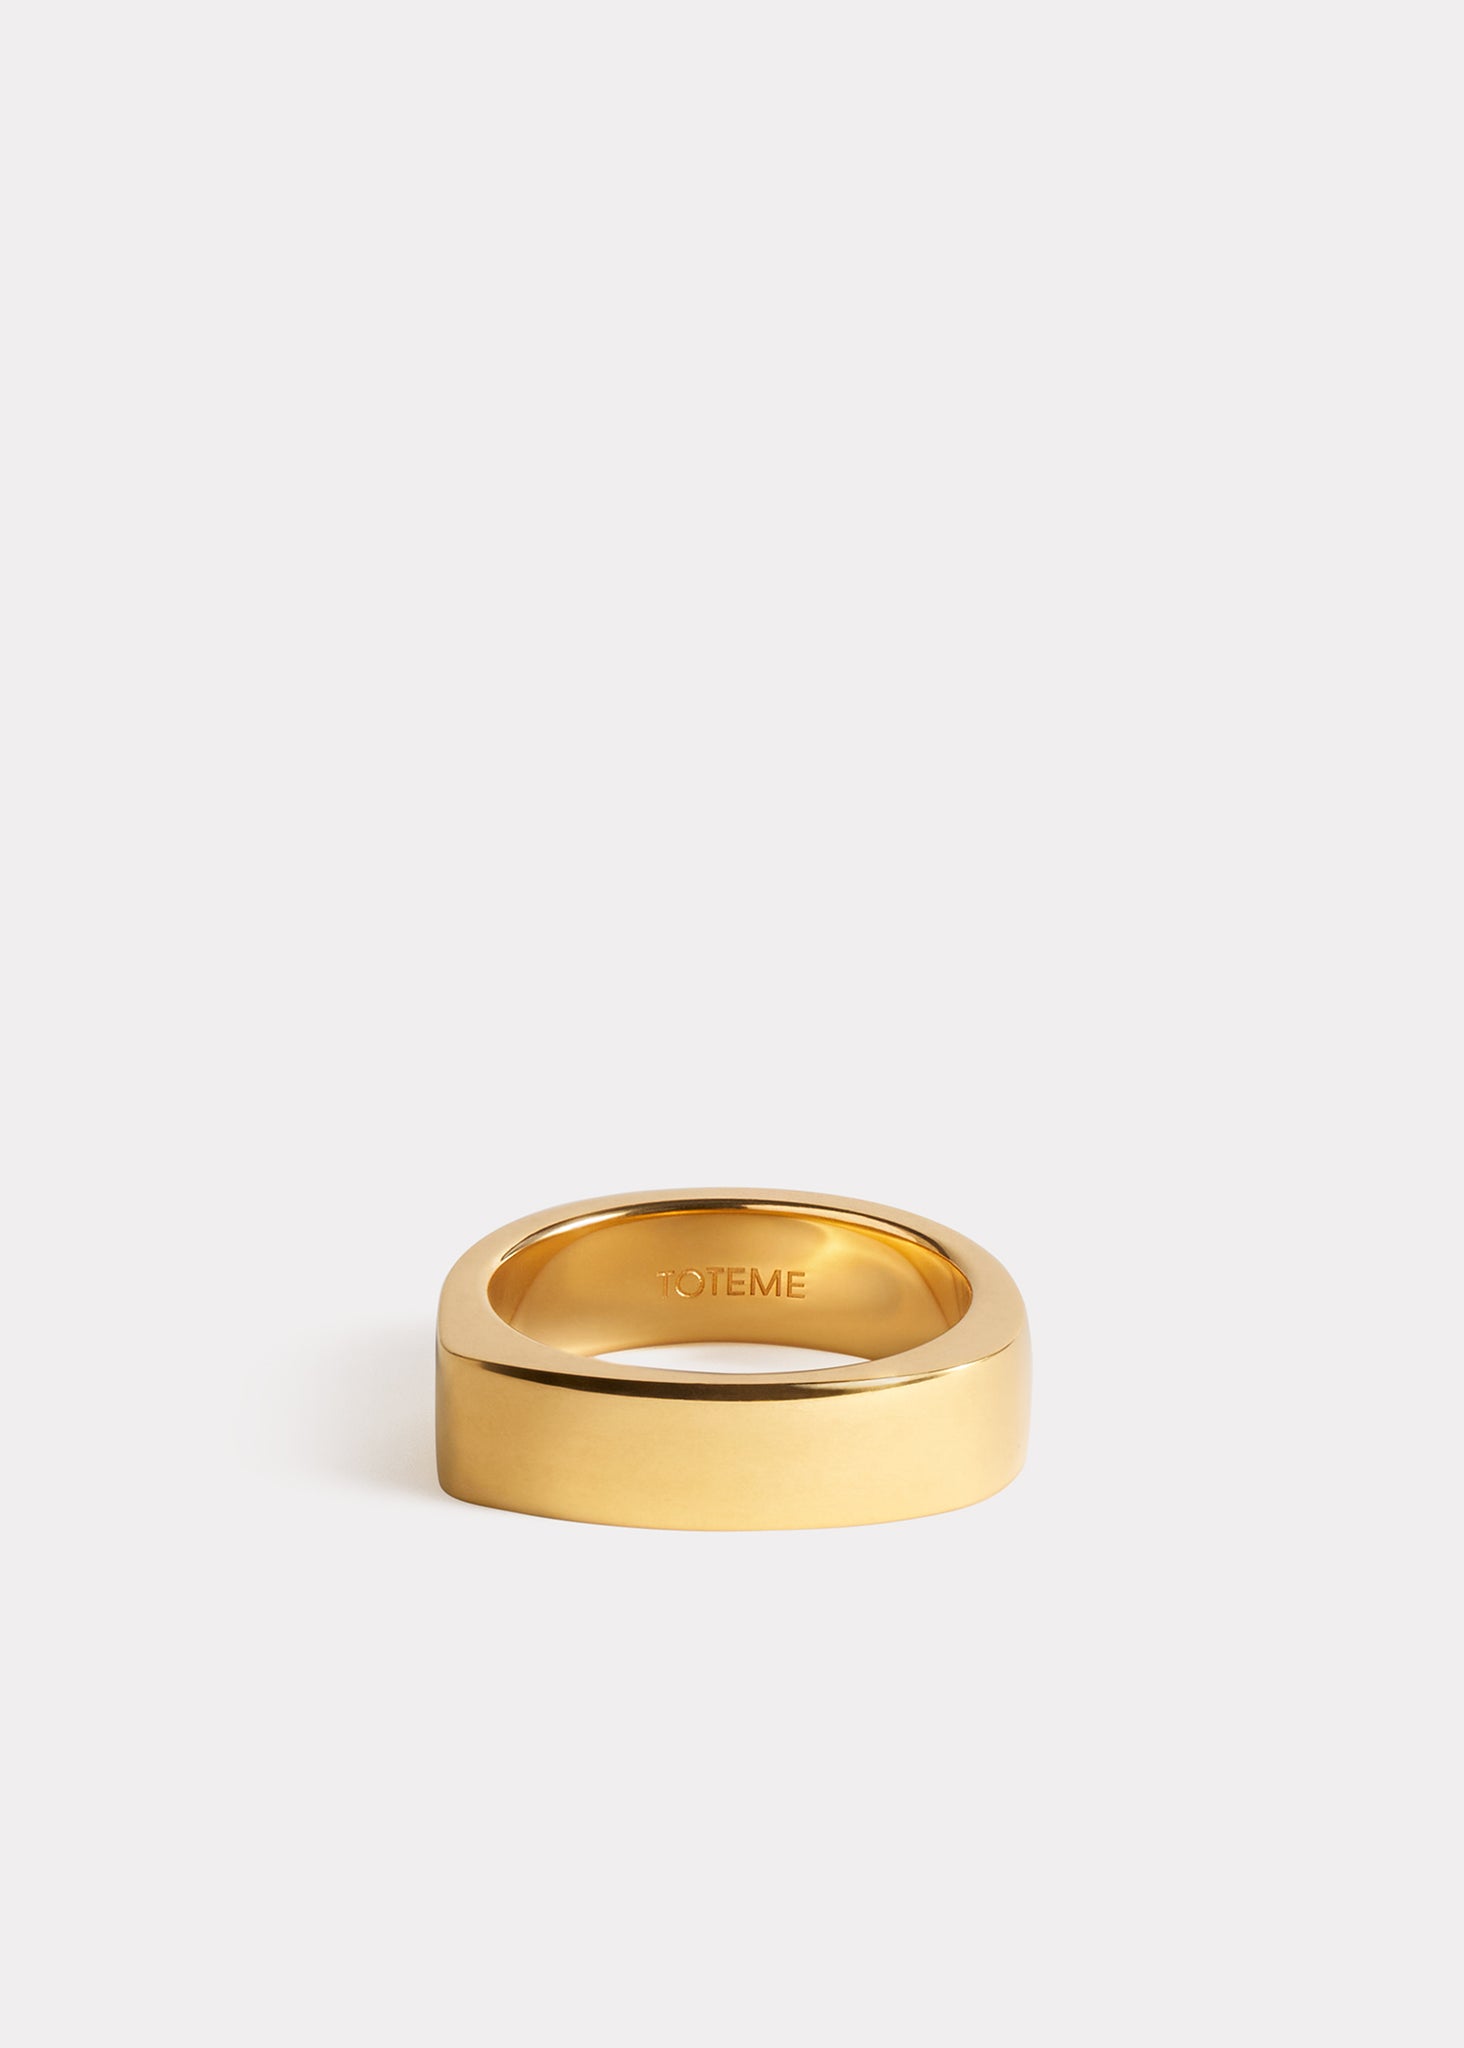 Signature ring gold